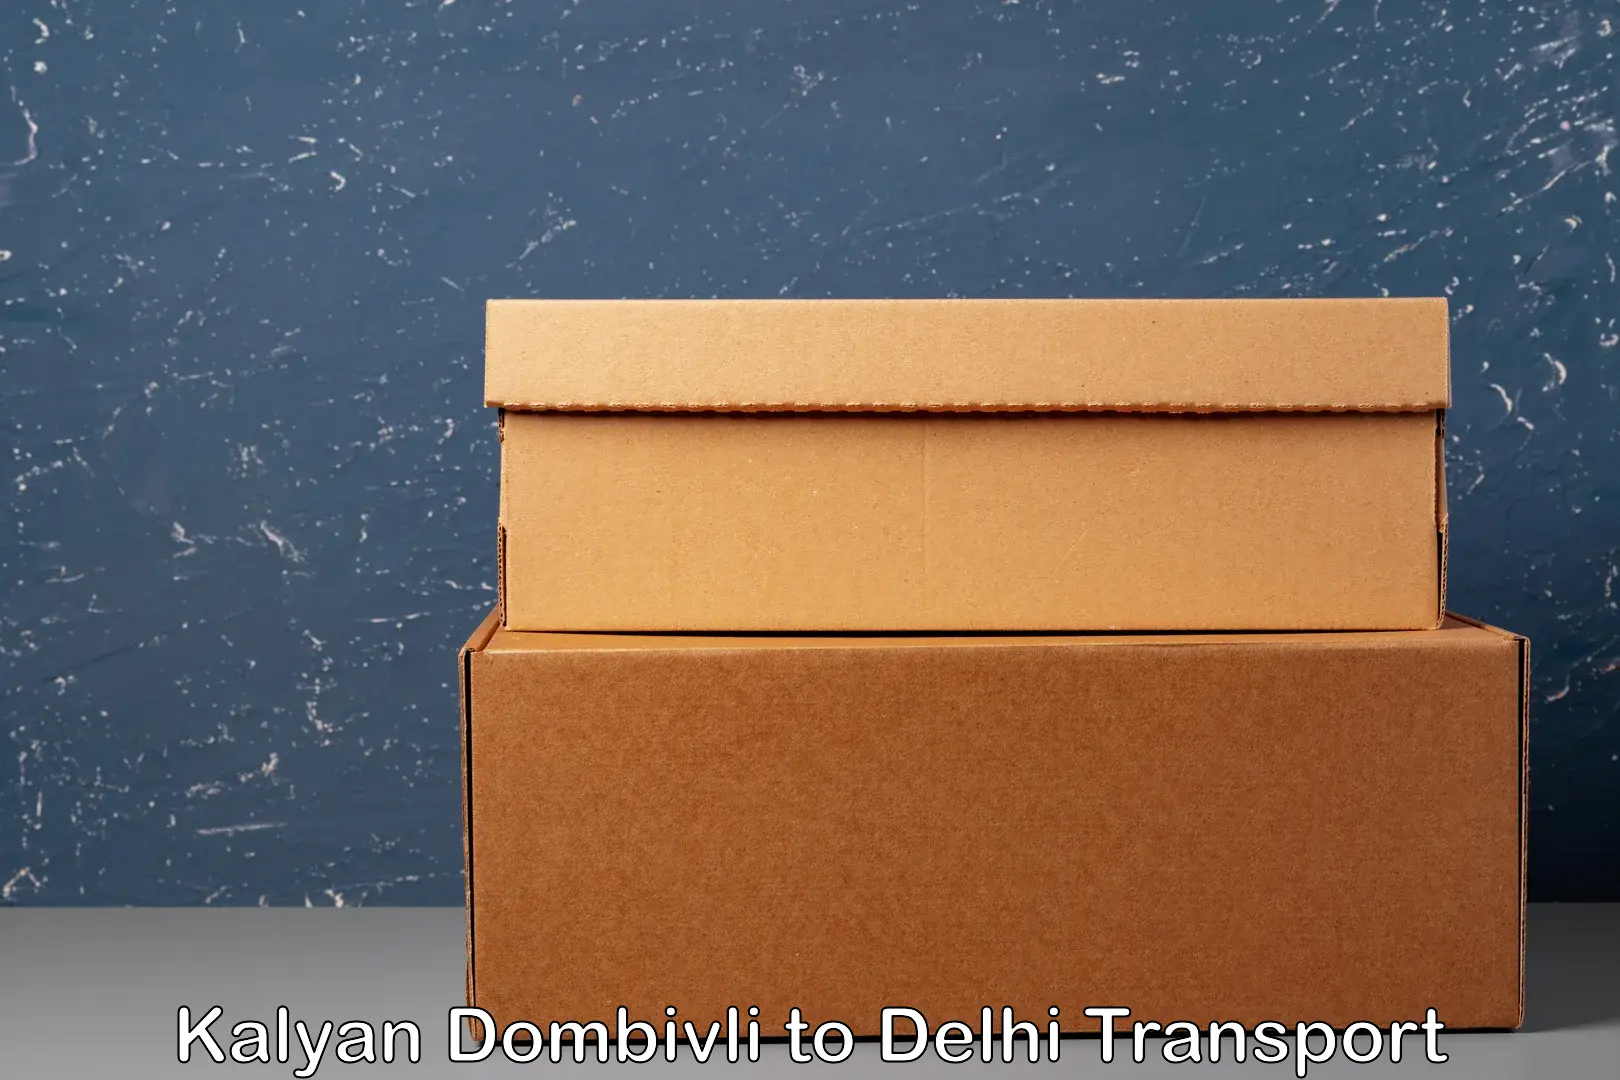 Door to door transport services Kalyan Dombivli to IIT Delhi